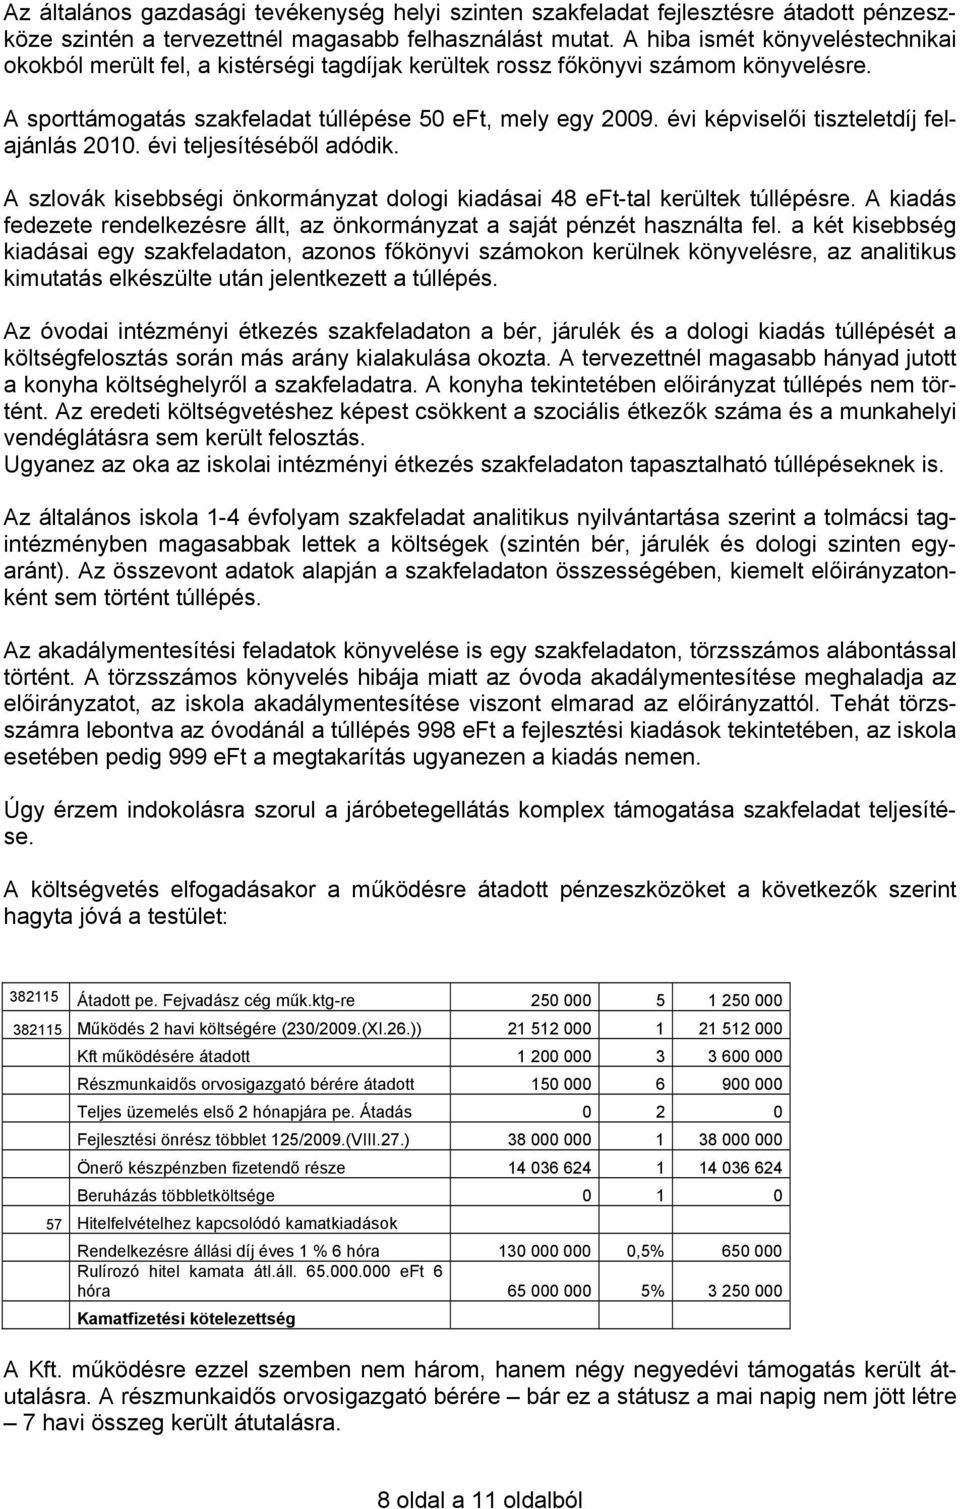 évi képviselői tiszteletdíj felajánlás 2010. évi teljesítéséből adódik. A szlovák kisebbségi önkormányzat dologi kiadásai 48 eft-tal kerültek túllépésre.